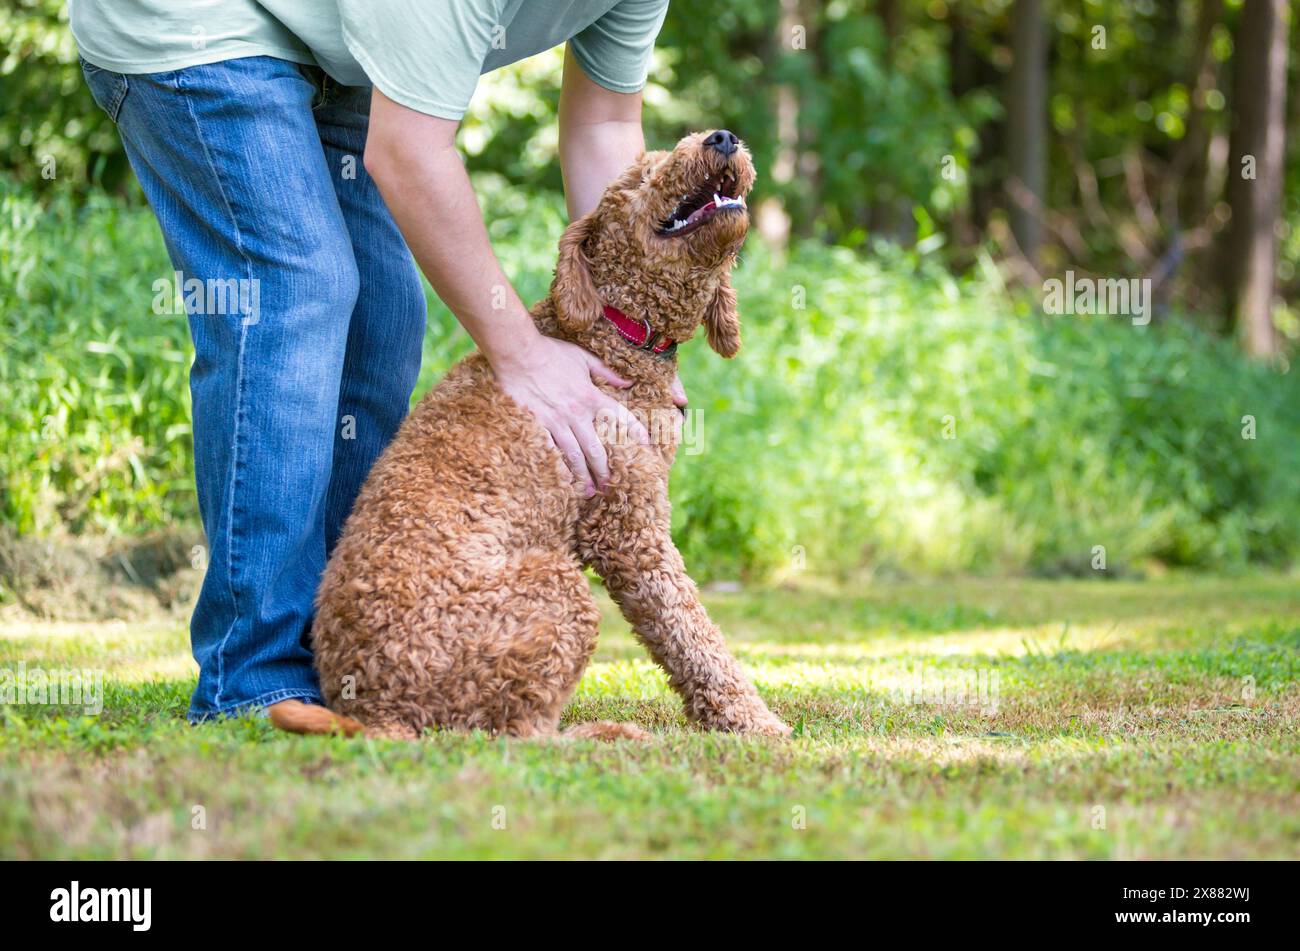 Eine Person, die einen Golden Retriever x Poodle Mischhund streichelt, auch bekannt als Goldendoodle Stockfoto